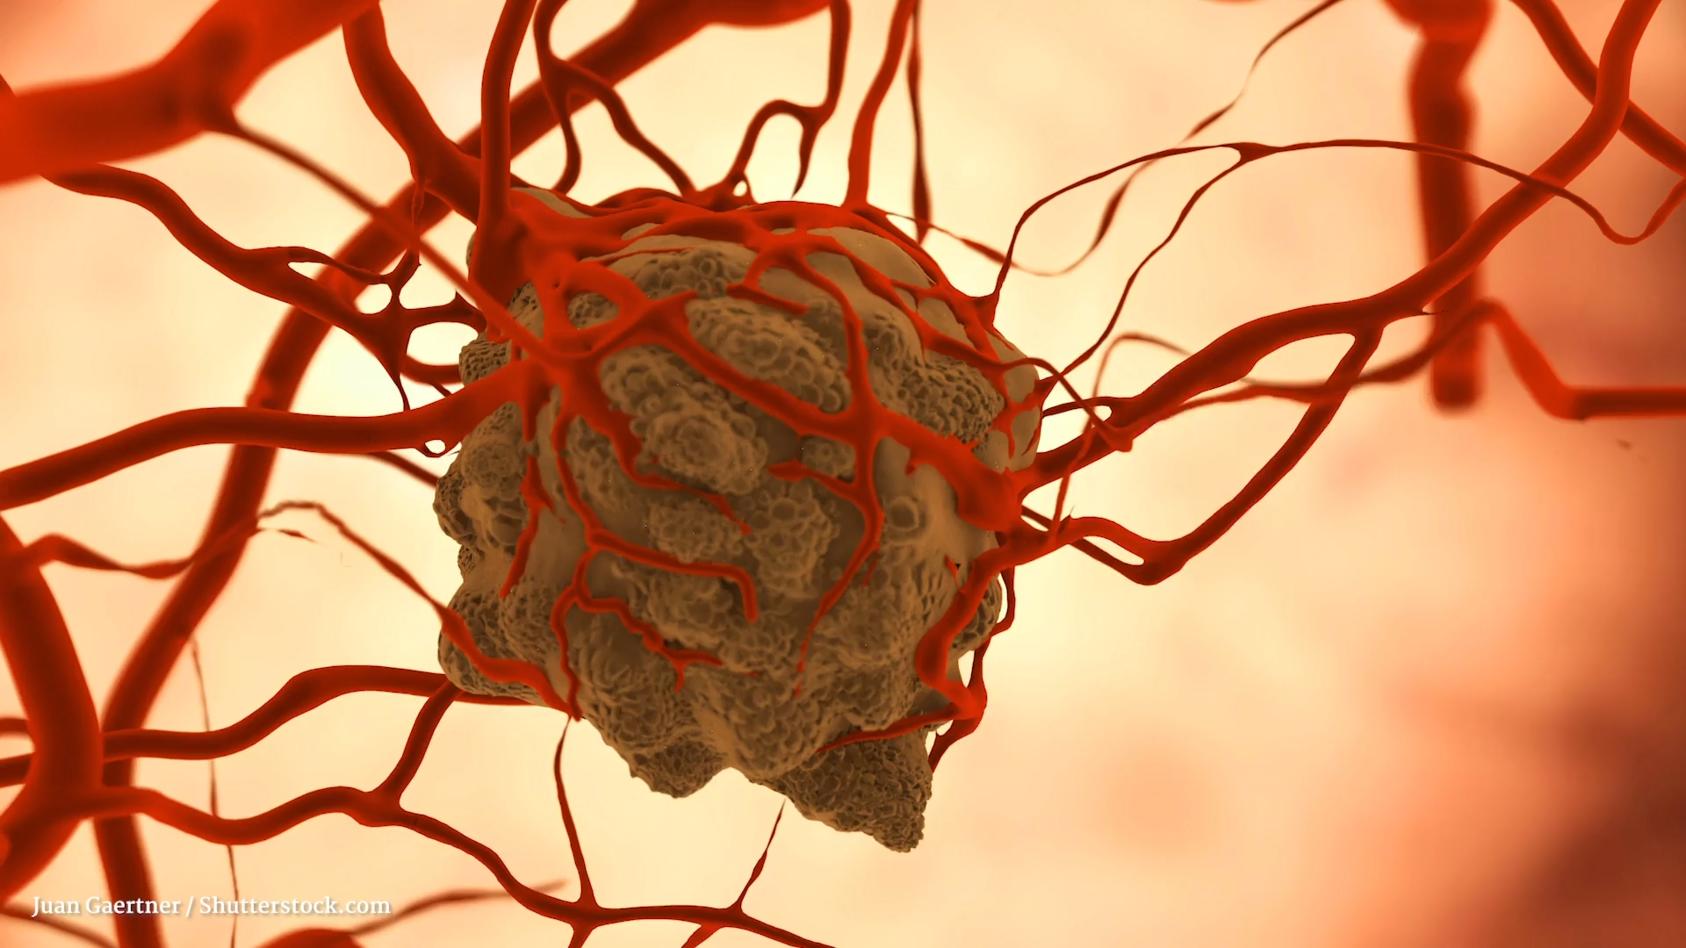 Tumore verstehen: die Grundlagen Gesundheitslexikon